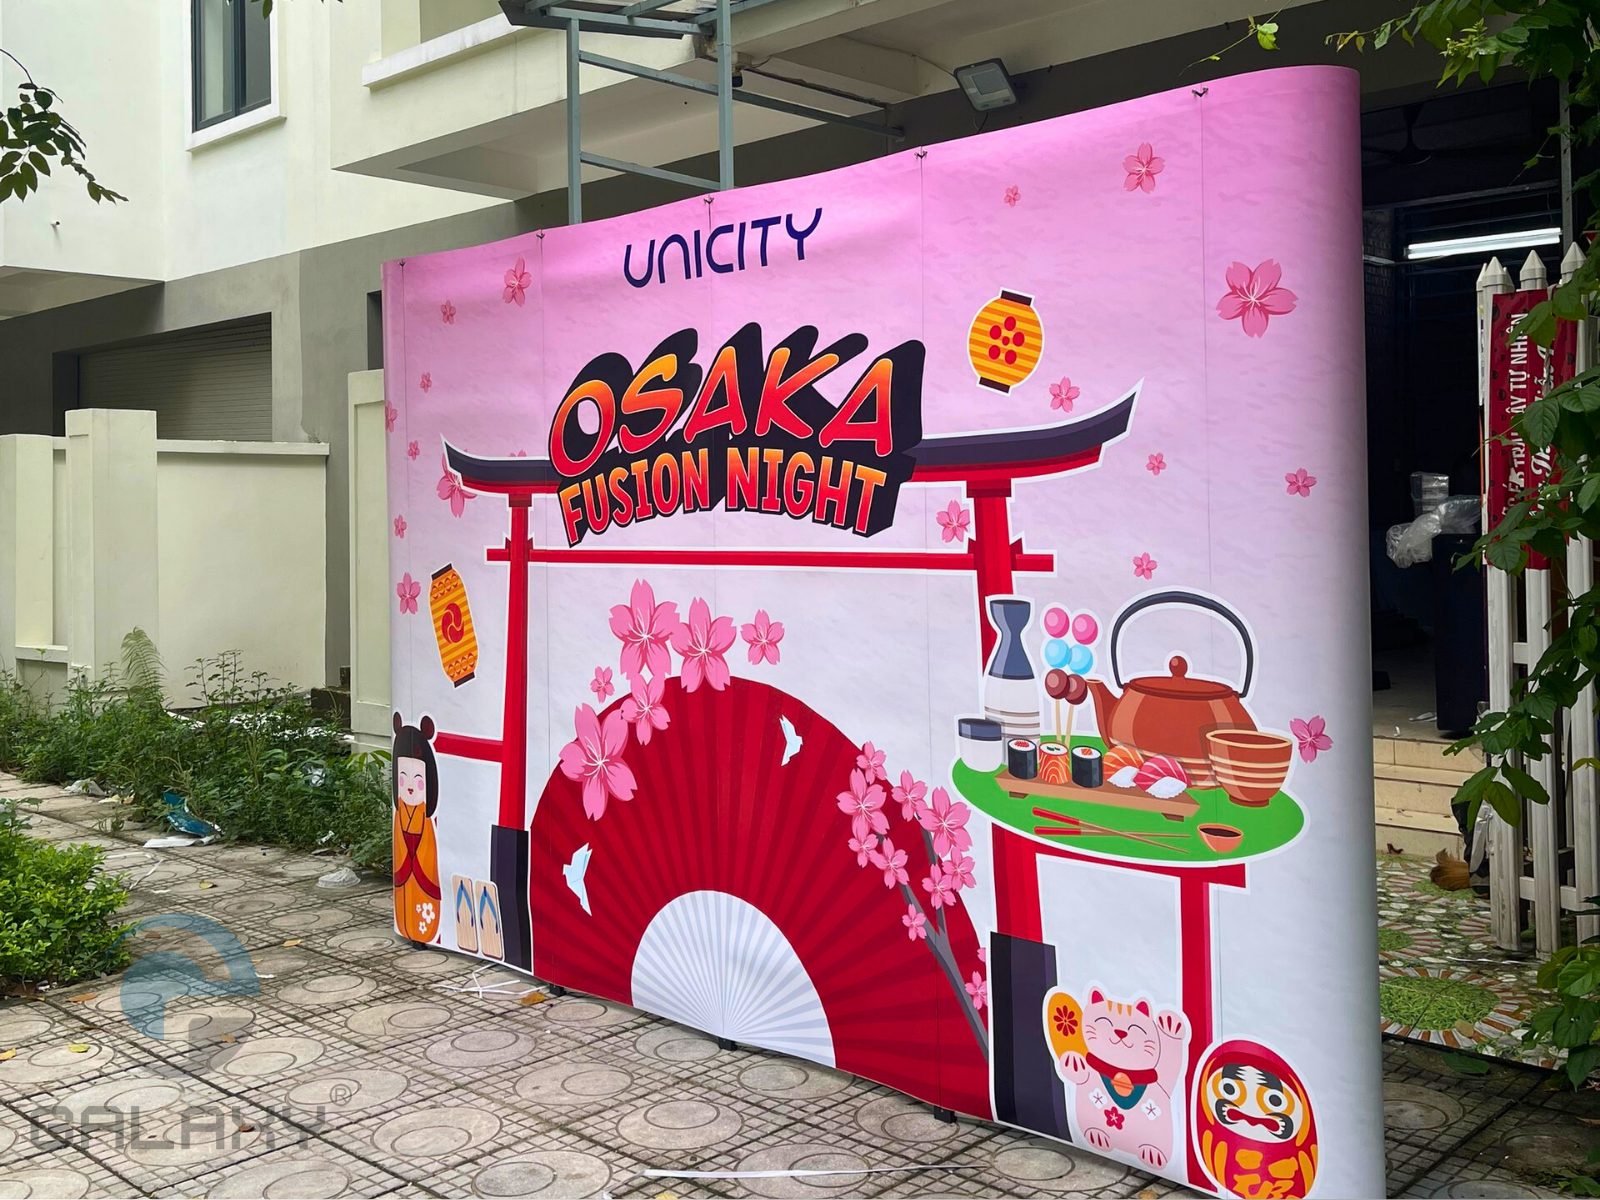 Unicity đã lựa chọn backdrop và standee như thế nào cho sự kiện của mình